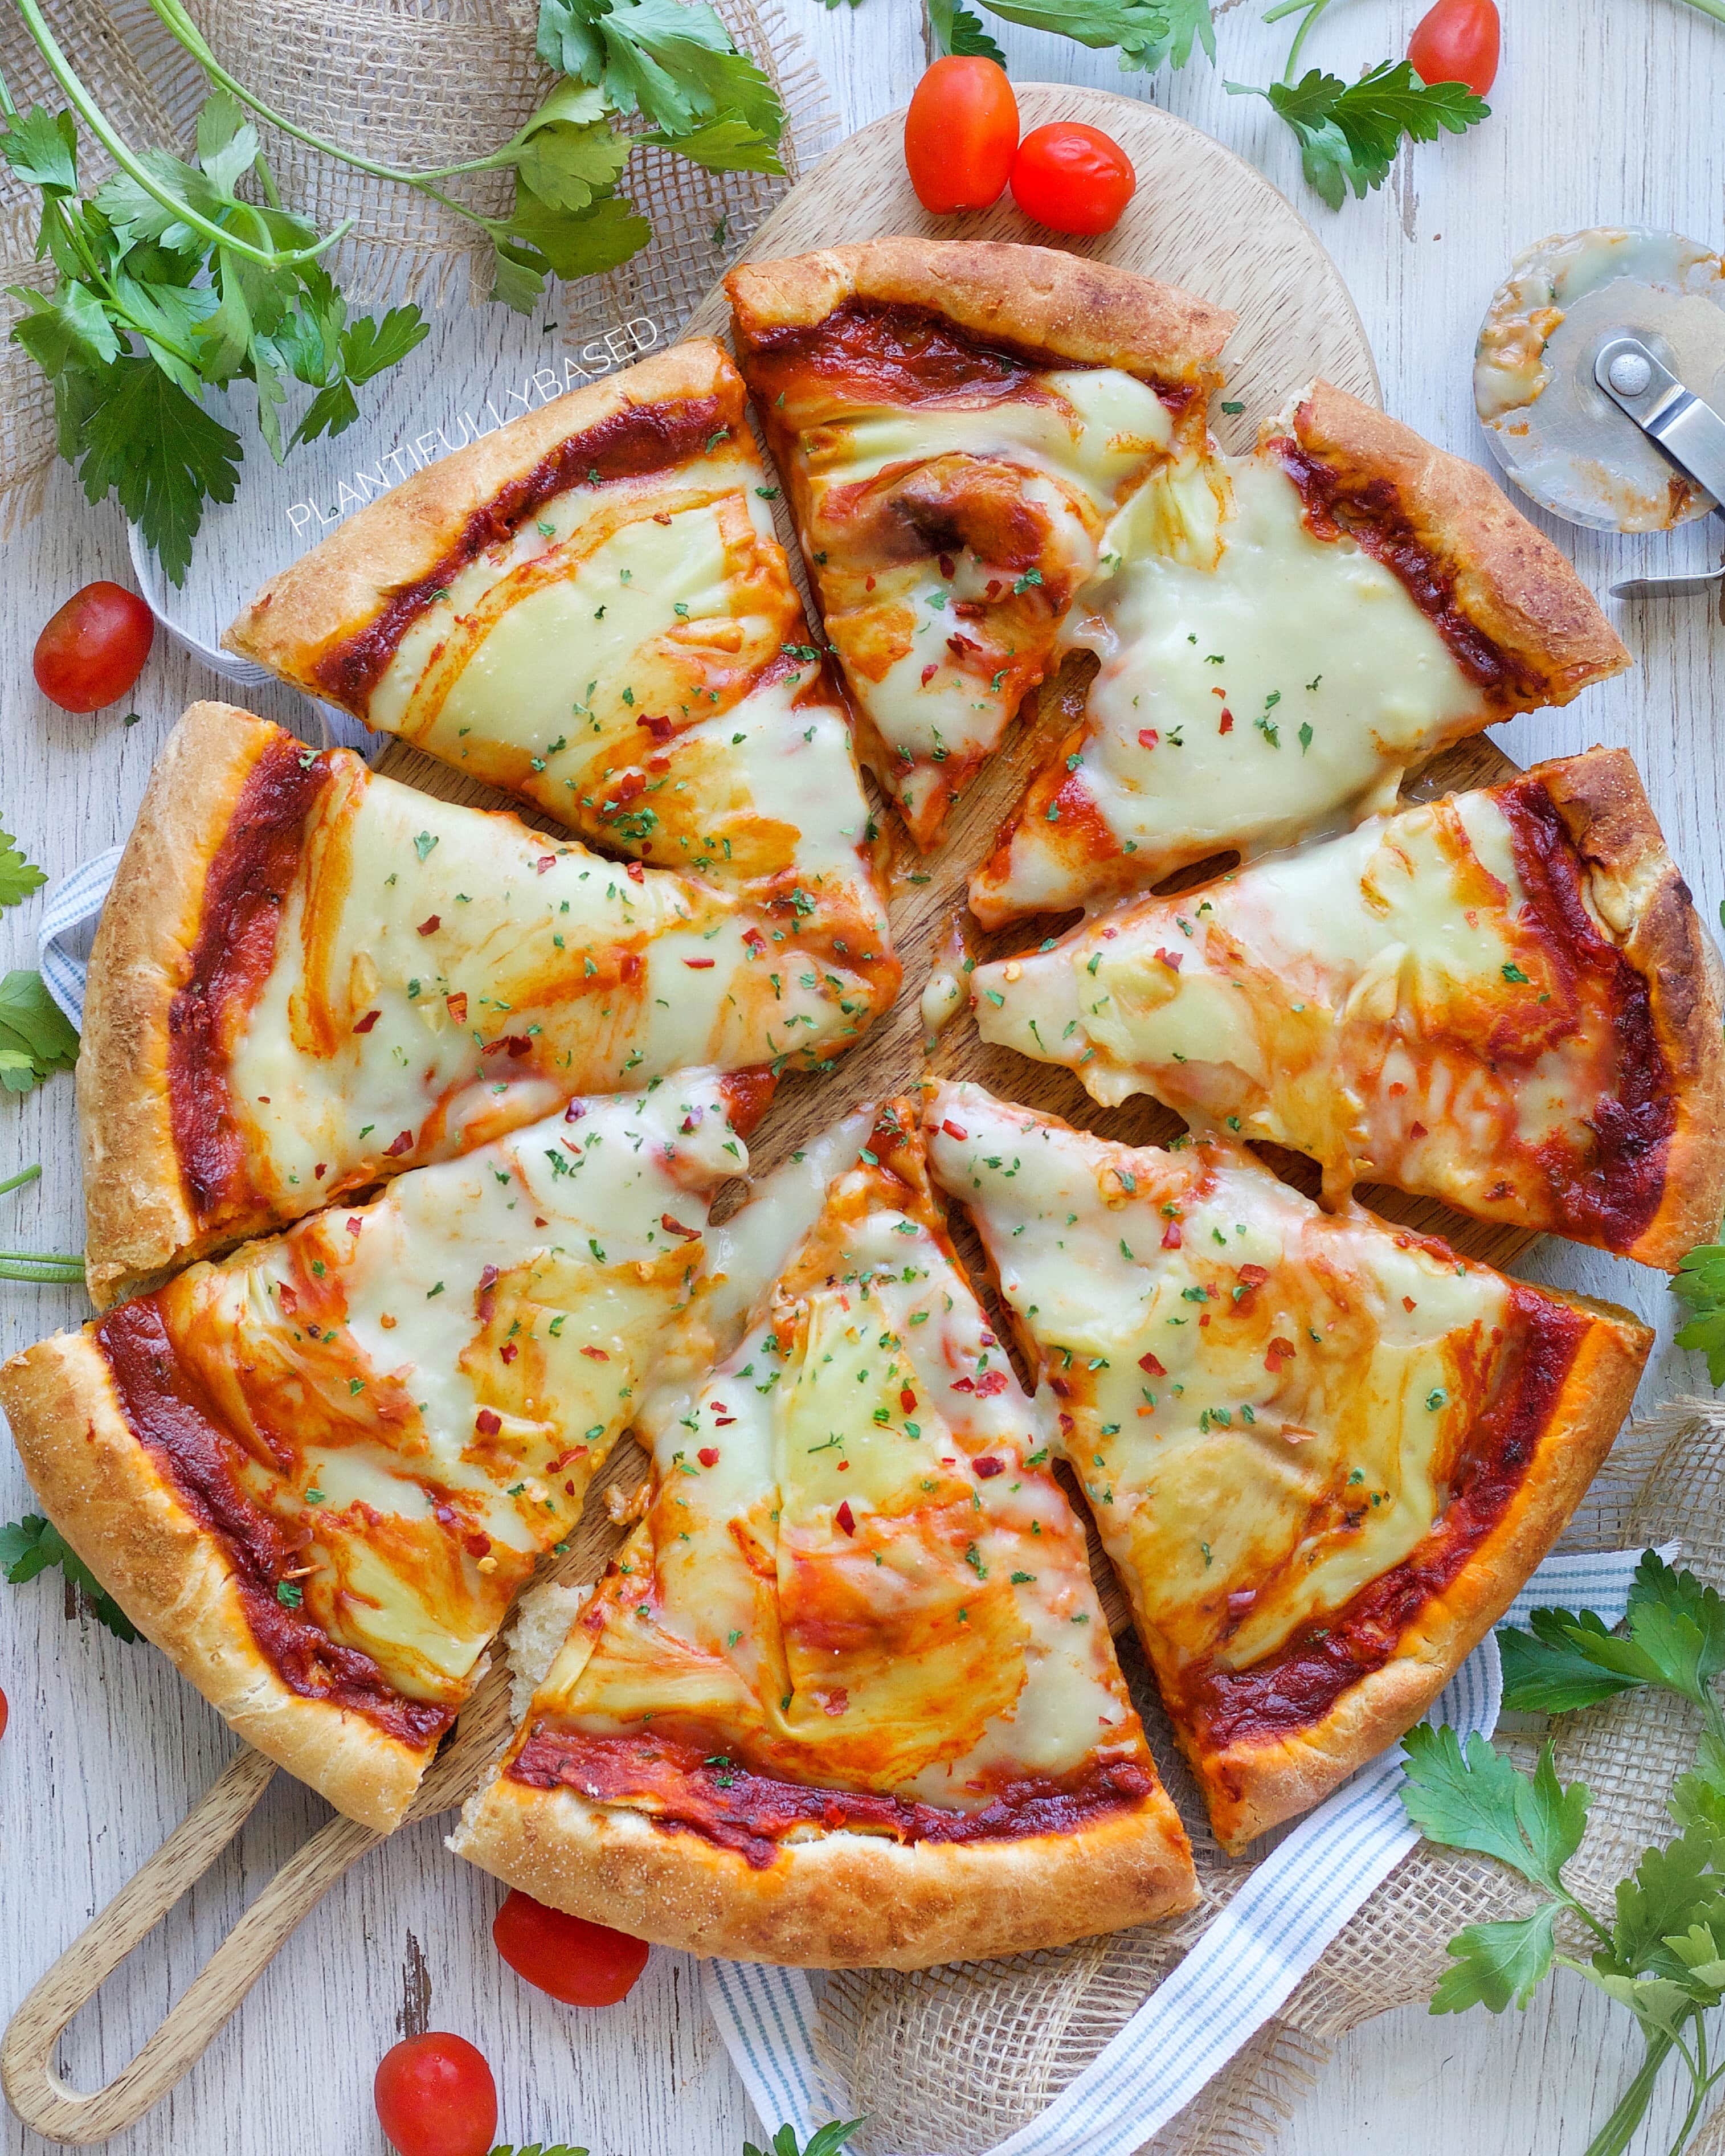 Easy Oil-free Homemade Pizza Sauce - The Vegan 8